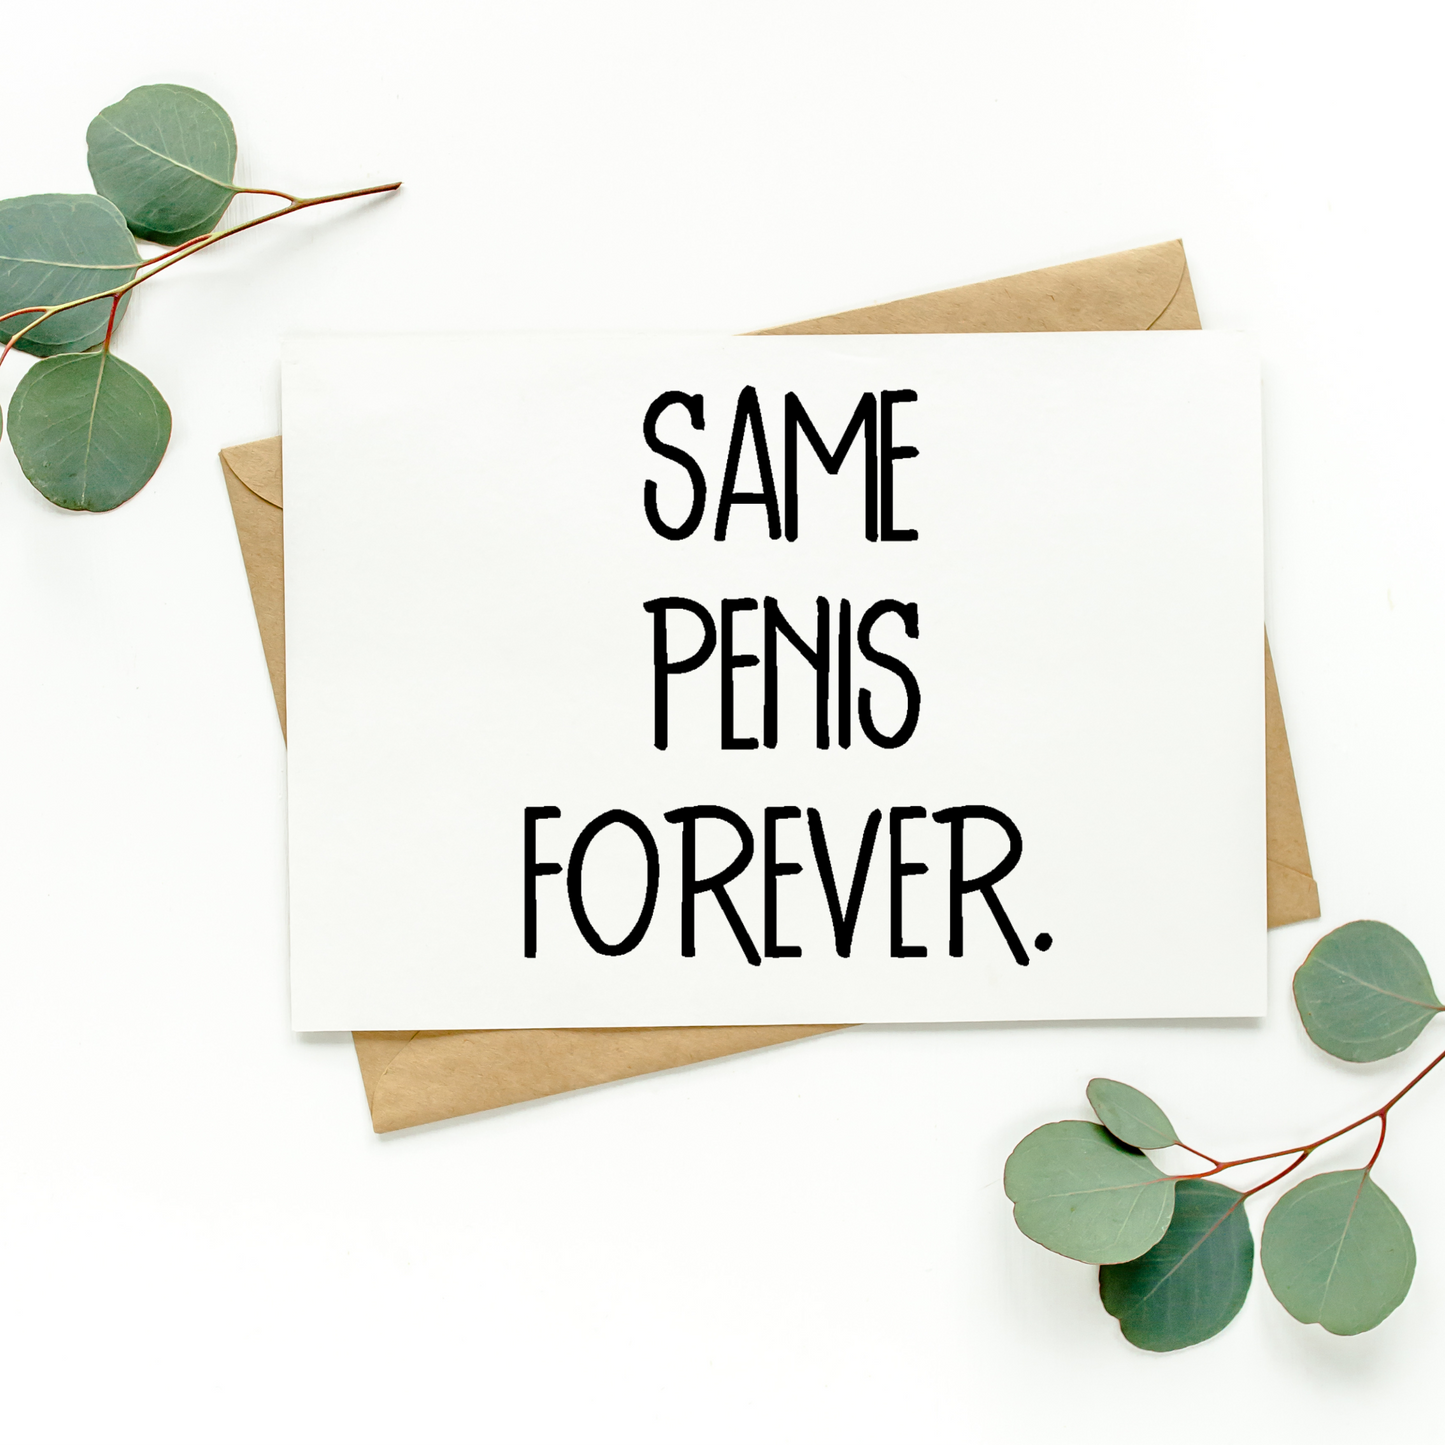 Same Penis Forever Card